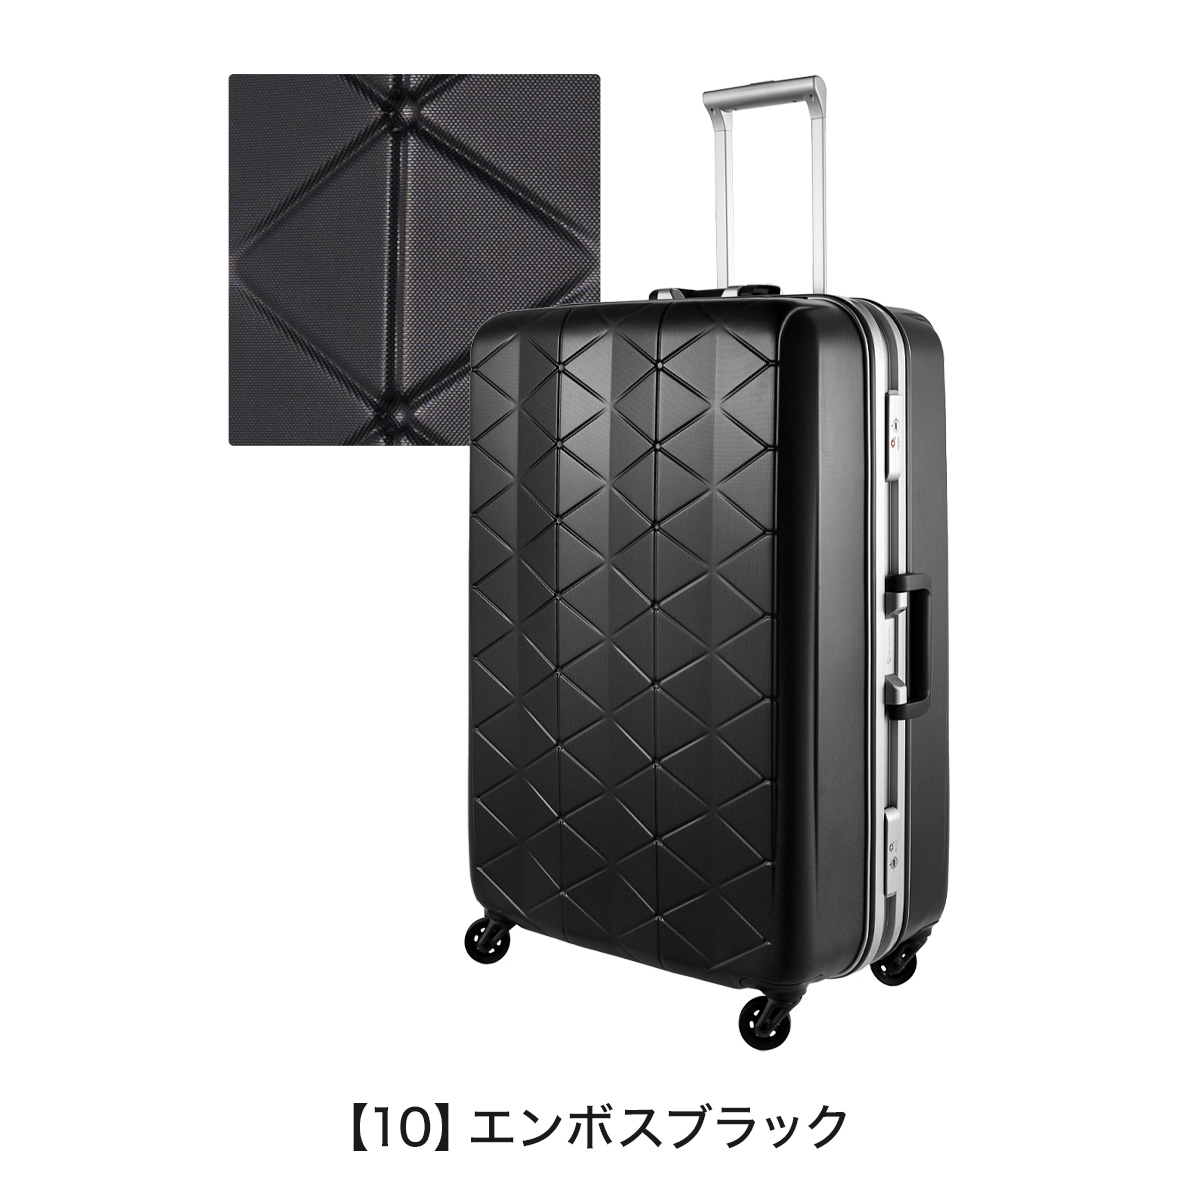 サンコー スーツケース 超軽量 MGC2-69 93L 69cm 4.3kg SUNCO 